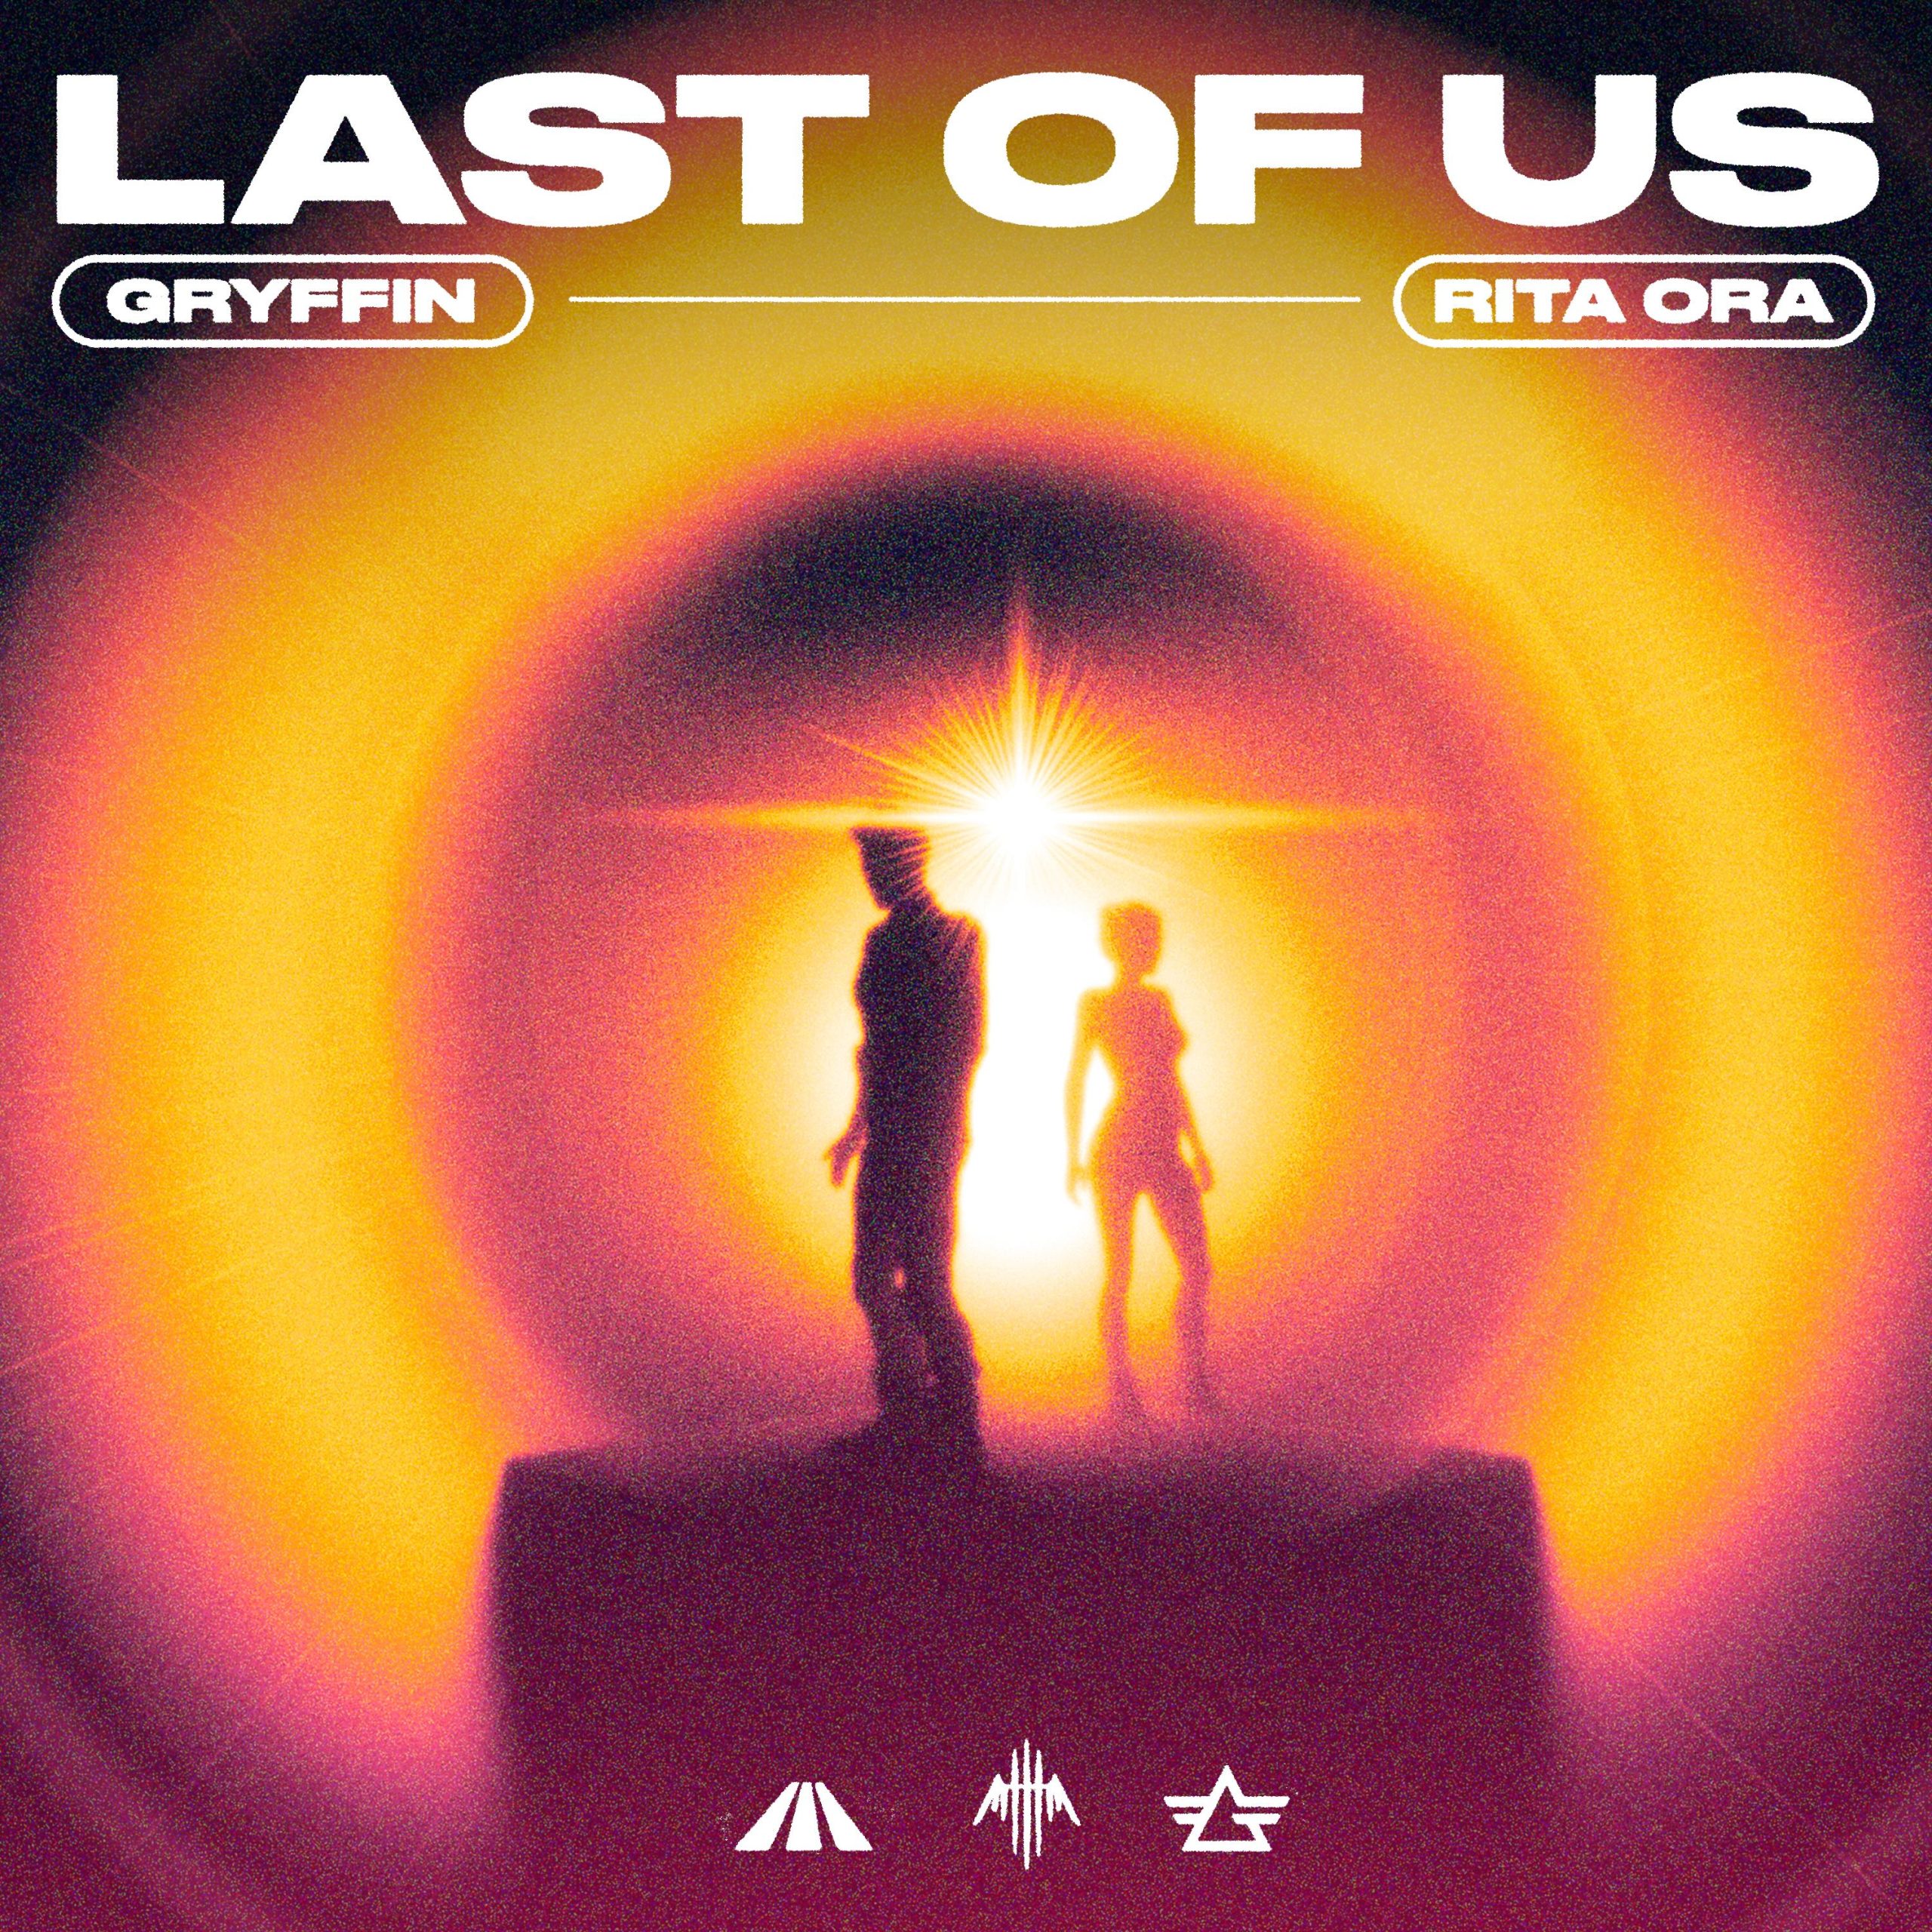 Gryffin “LAST OF US” feat. Rita Ora